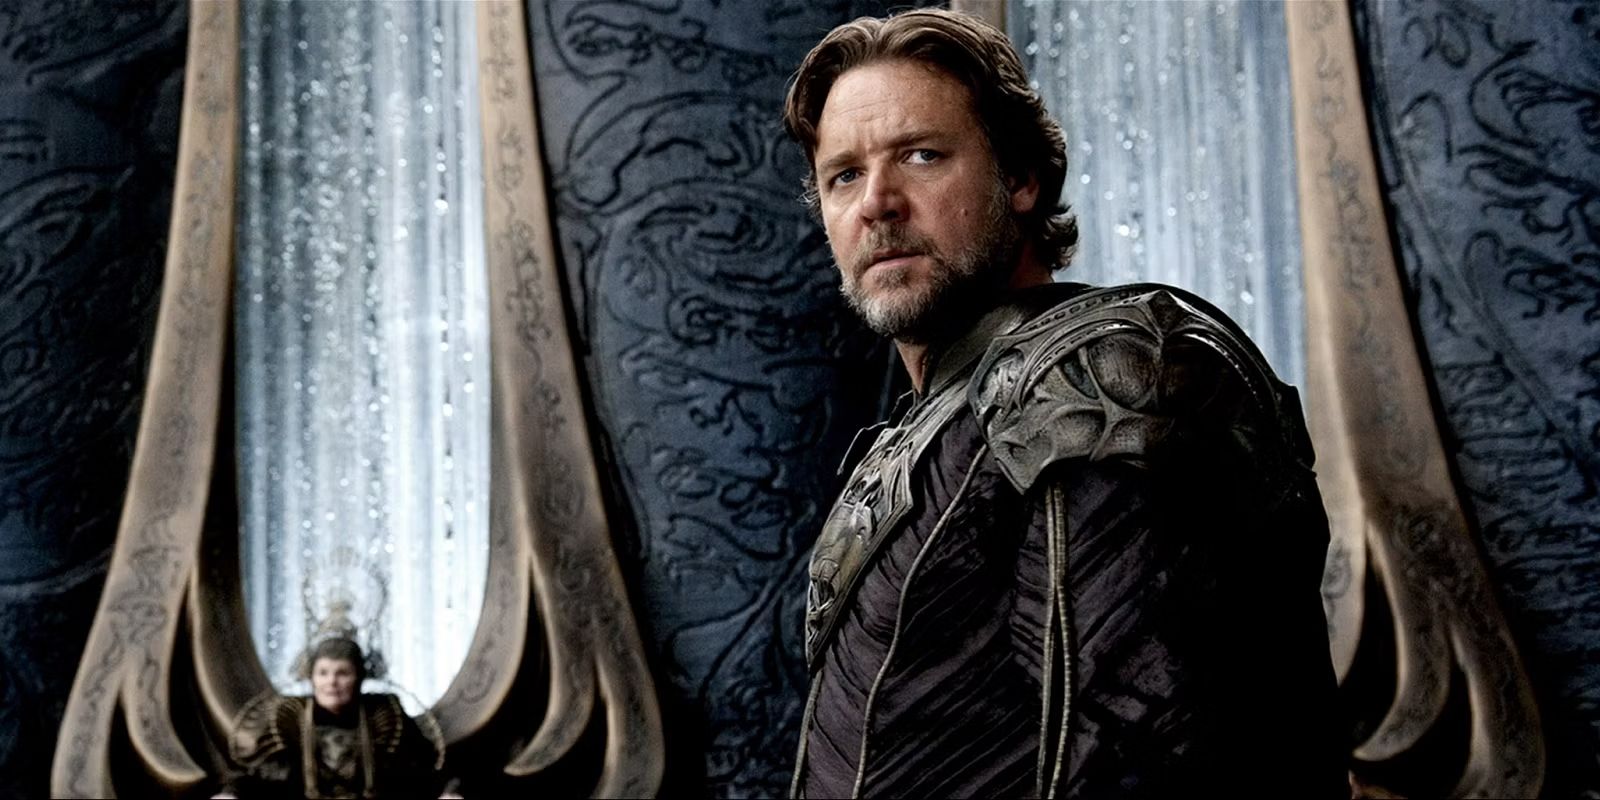 Russell Crowe as Jor El in Man of Steel wide